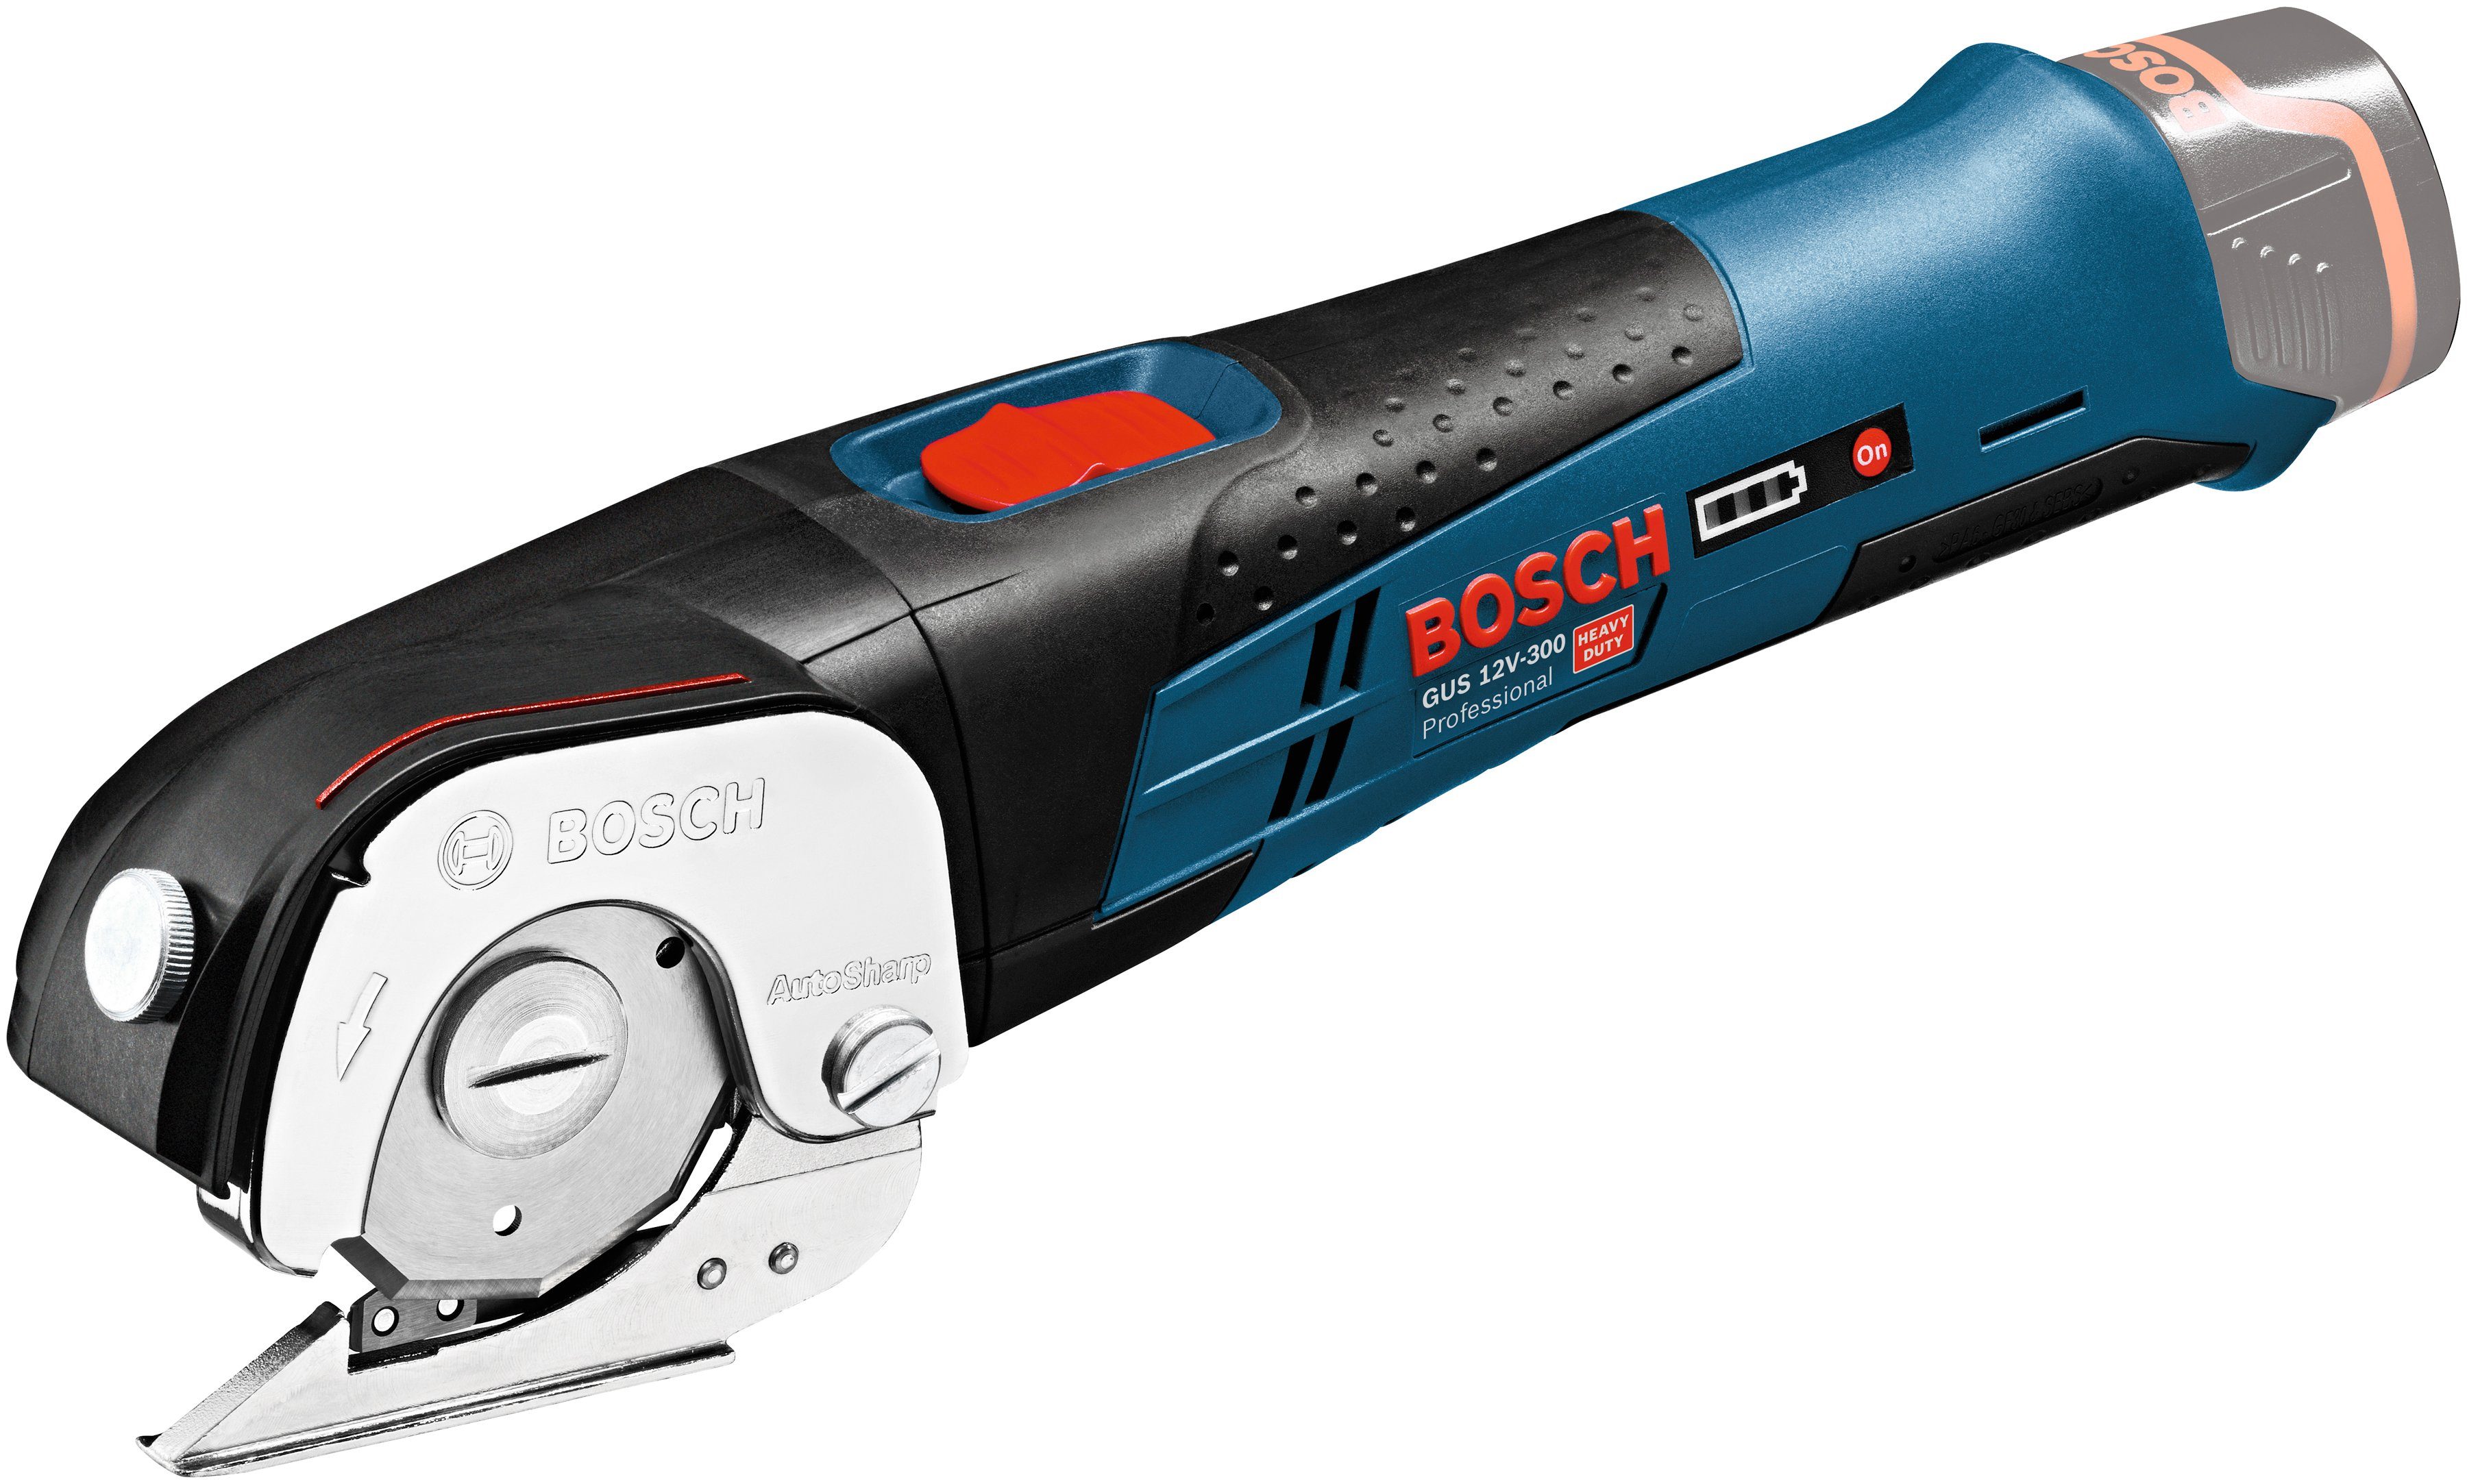 Bosch Professional Akku-Universalschere GUS 12V-300, ohne Akku und Ladegerät